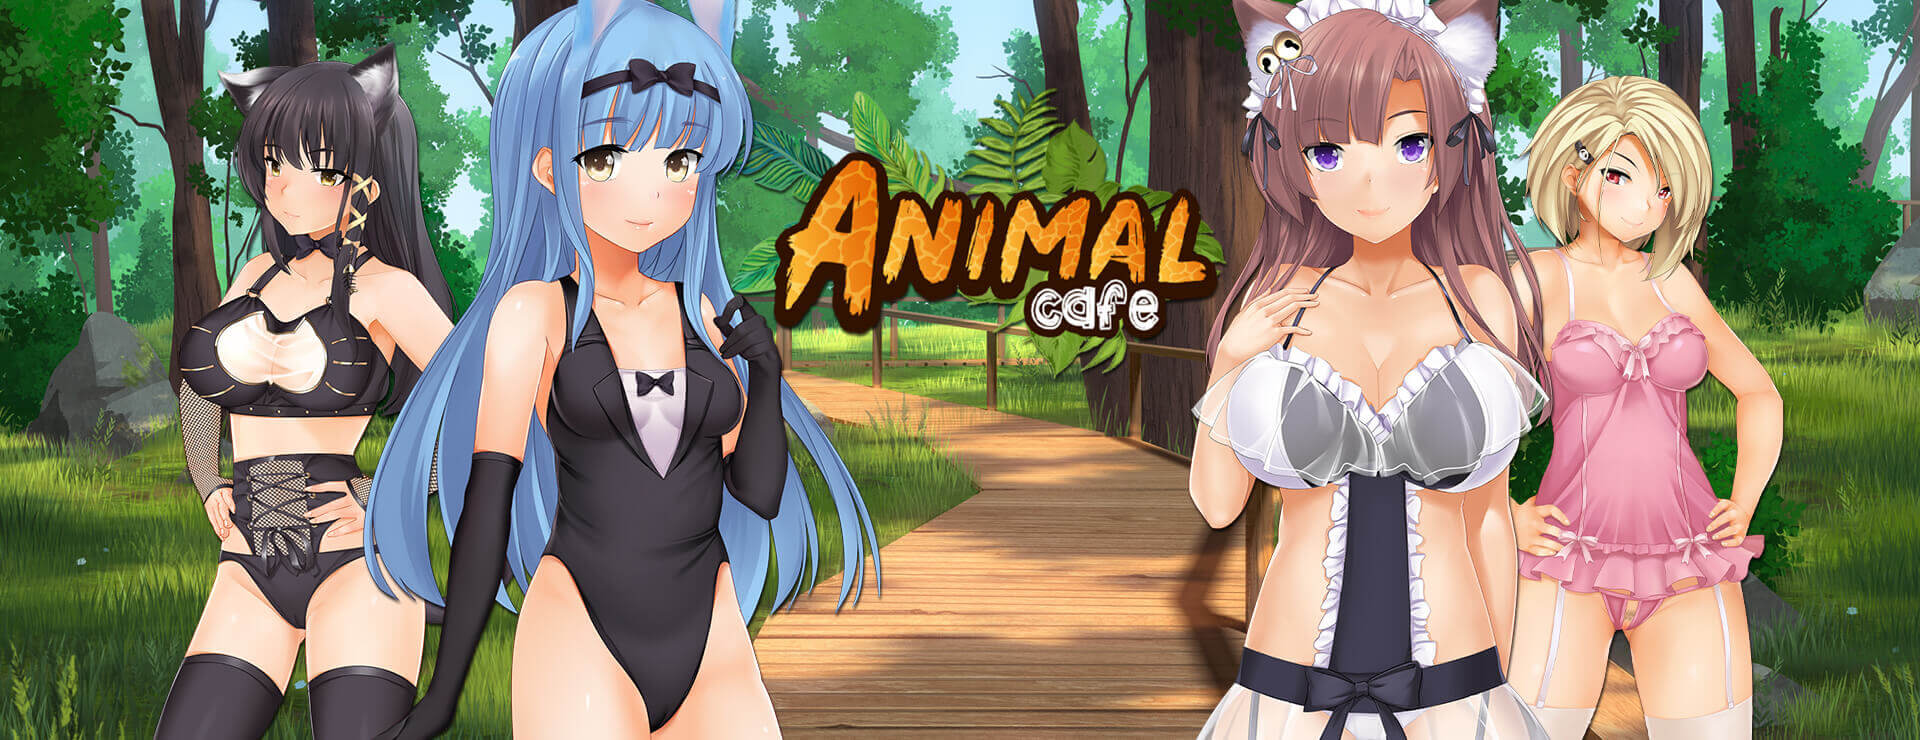 Animal Cafe - ビジュアルノベル ゲーム